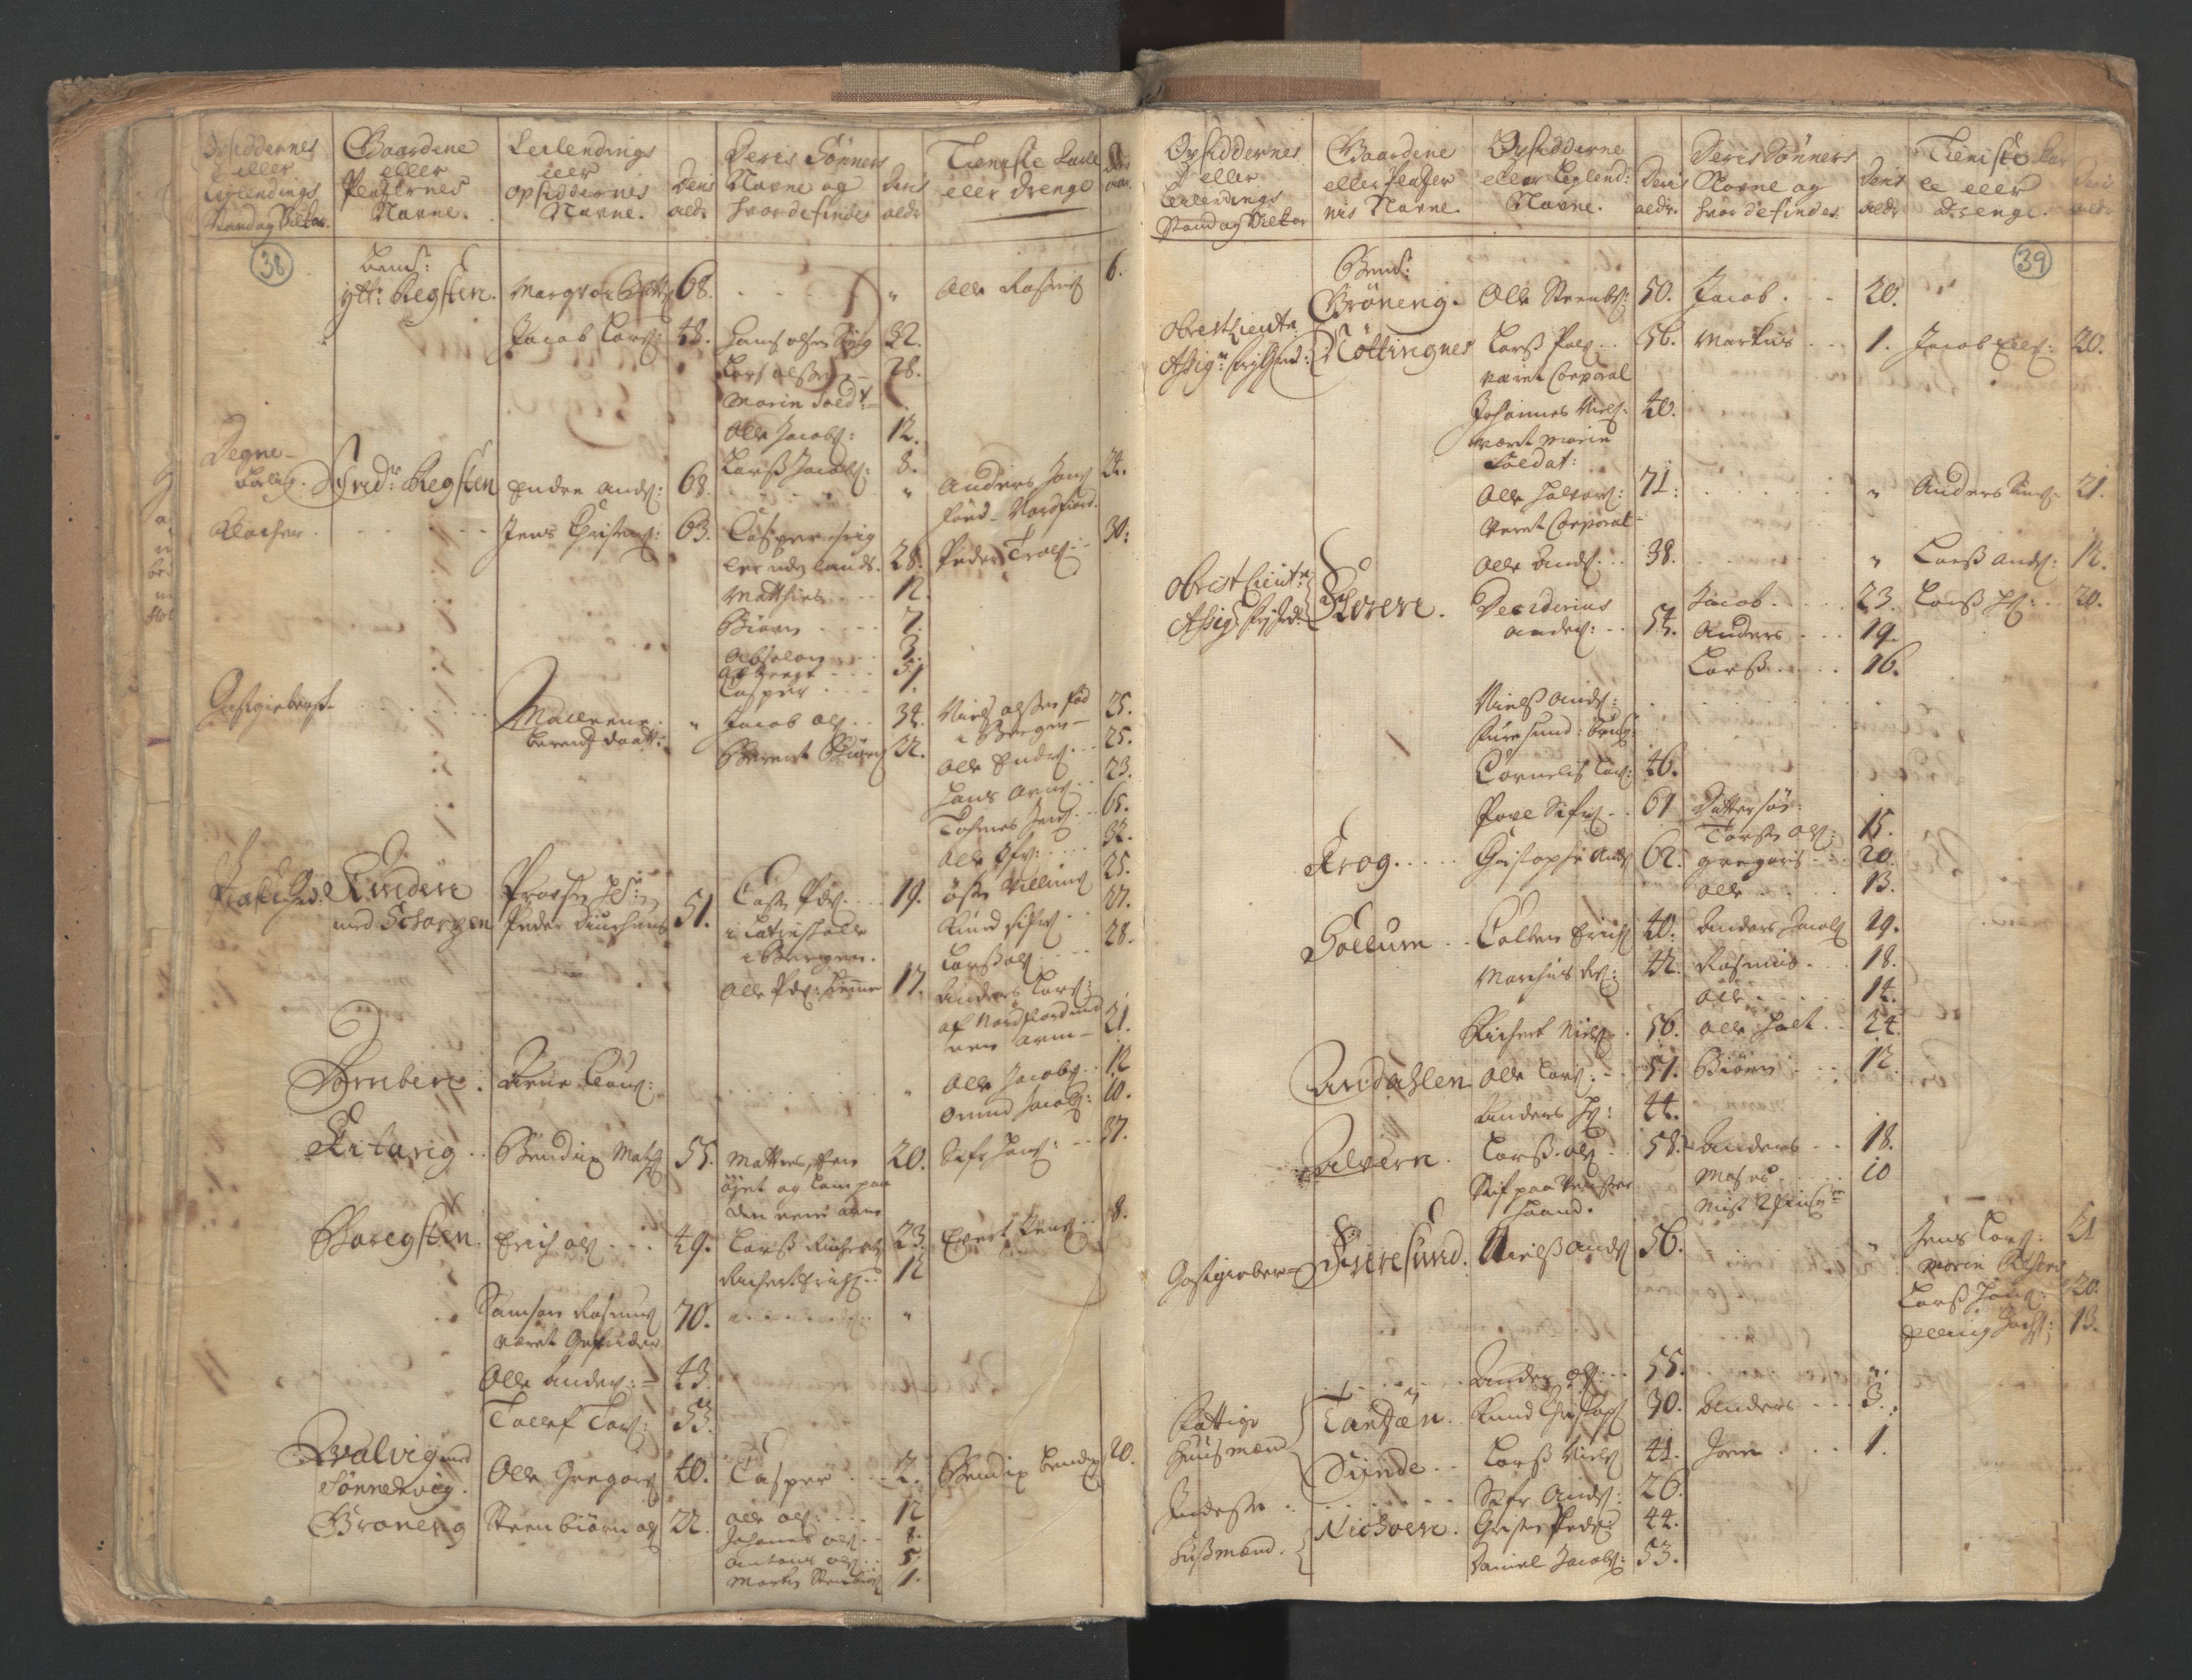 RA, Manntallet 1701, nr. 9: Sunnfjord fogderi, Nordfjord fogderi og Svanø birk, 1701, s. 38-39